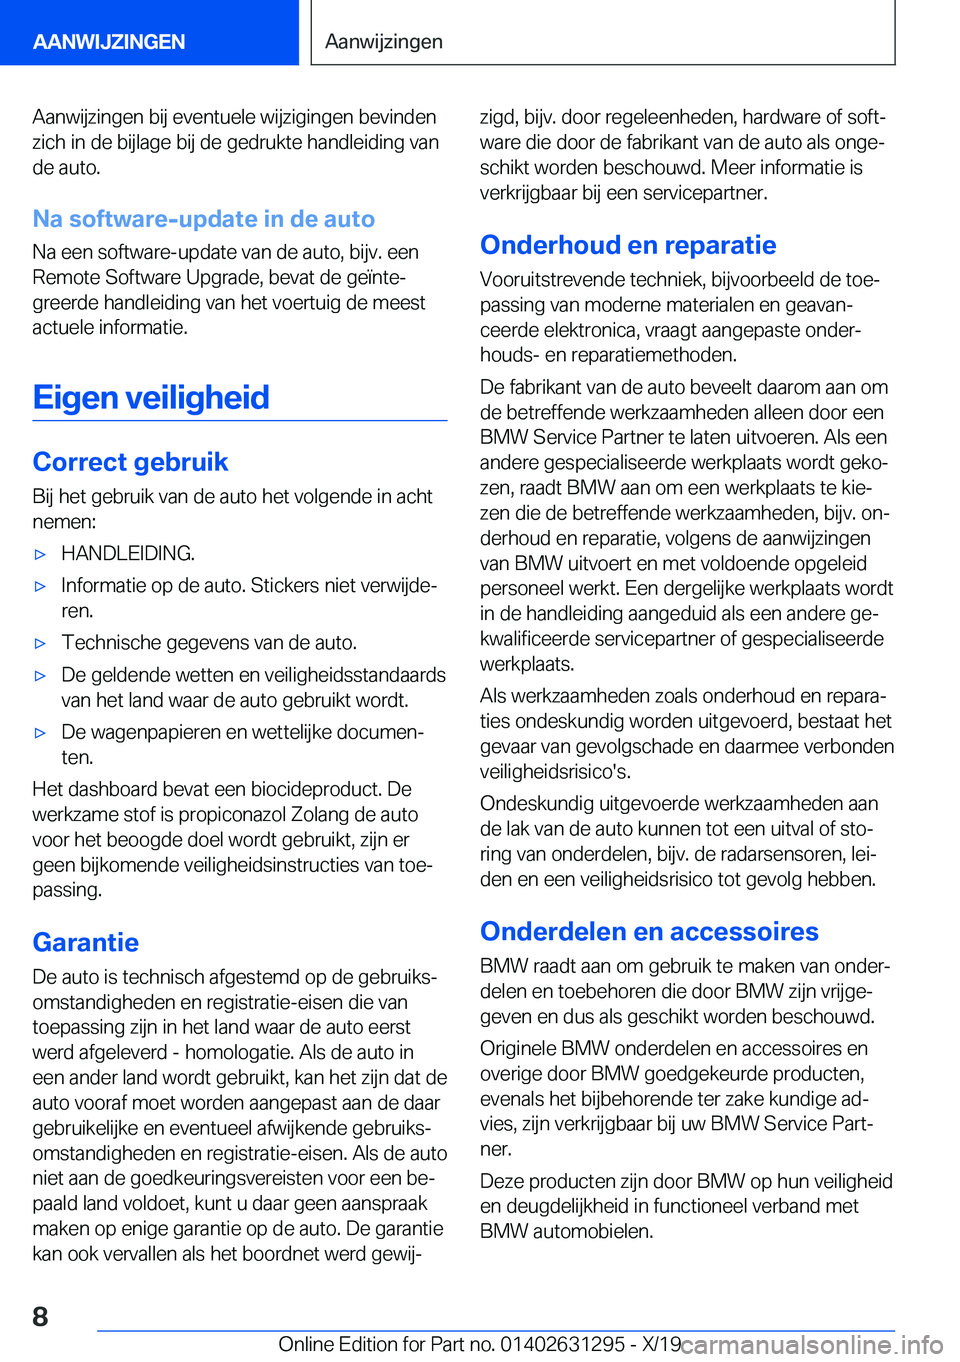 BMW M8 2020  Instructieboekjes (in Dutch) �A�a�n�w�i�j�z�i�n�g�e�n��b�i�j��e�v�e�n�t�u�e�l�e��w�i�j�z�i�g�i�n�g�e�n��b�e�v�i�n�d�e�n�z�i�c�h��i�n��d�e��b�i�j�l�a�g�e��b�i�j��d�e��g�e�d�r�u�k�t�e��h�a�n�d�l�e�i�d�i�n�g��v�a�n
�d�e�